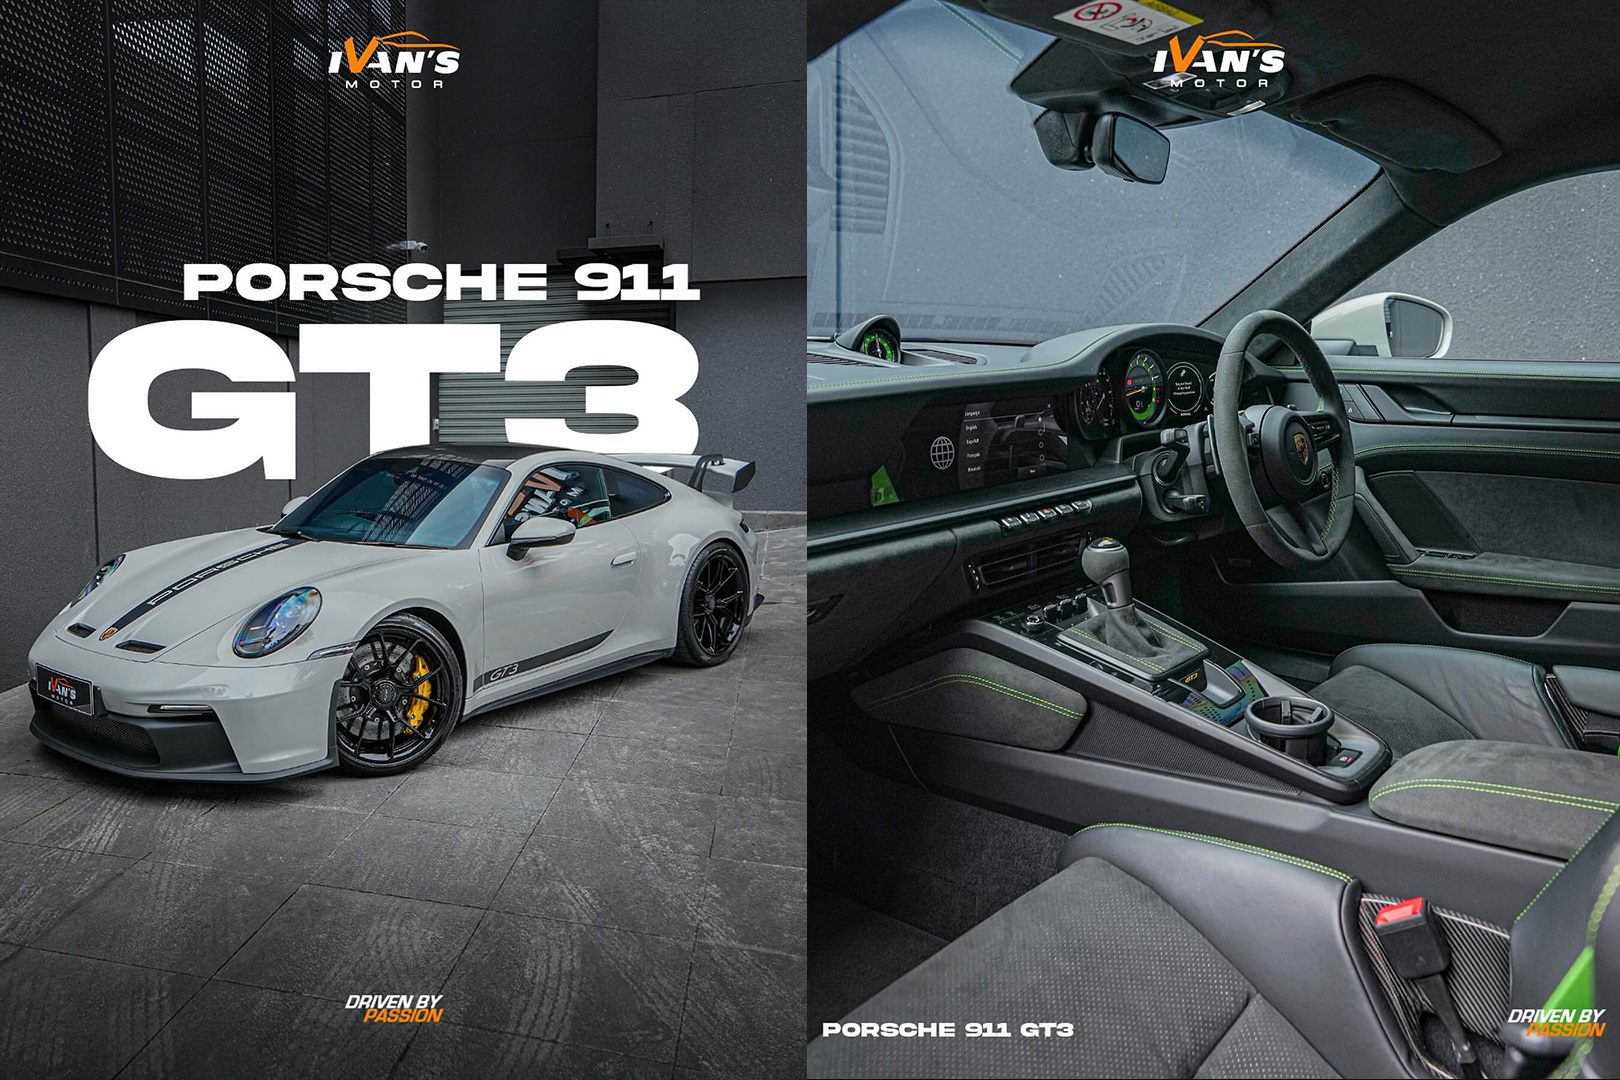 Ini Foto Porsche 911 GT3 yang Dihapus Ivan's Motor dari Instagram Usai Ditabrak Xpander di Showroom  